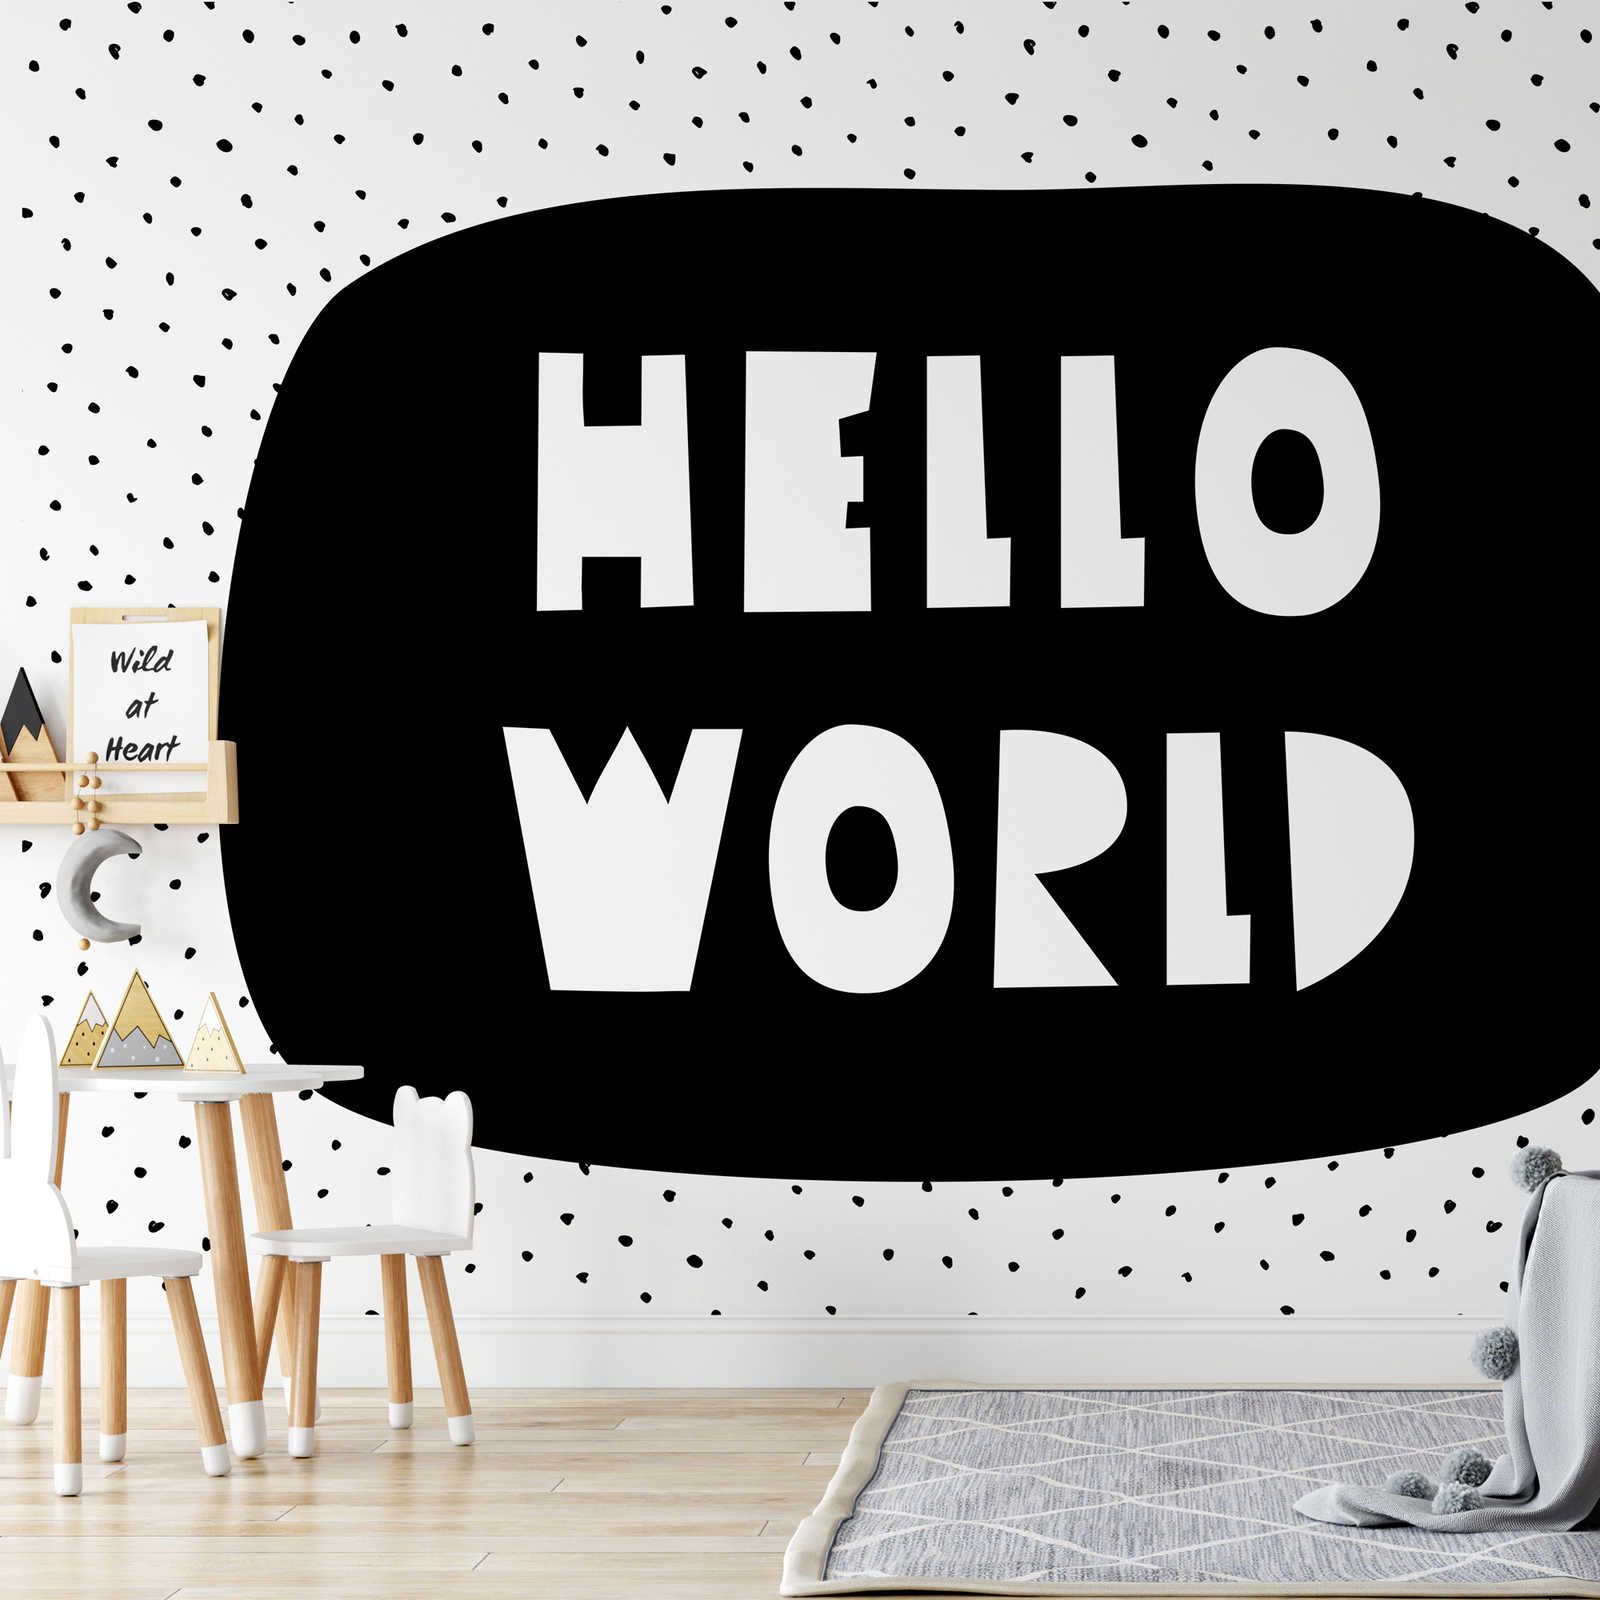 Digital behang voor kinderkamer met "Hello World" letters - structuurvlies
